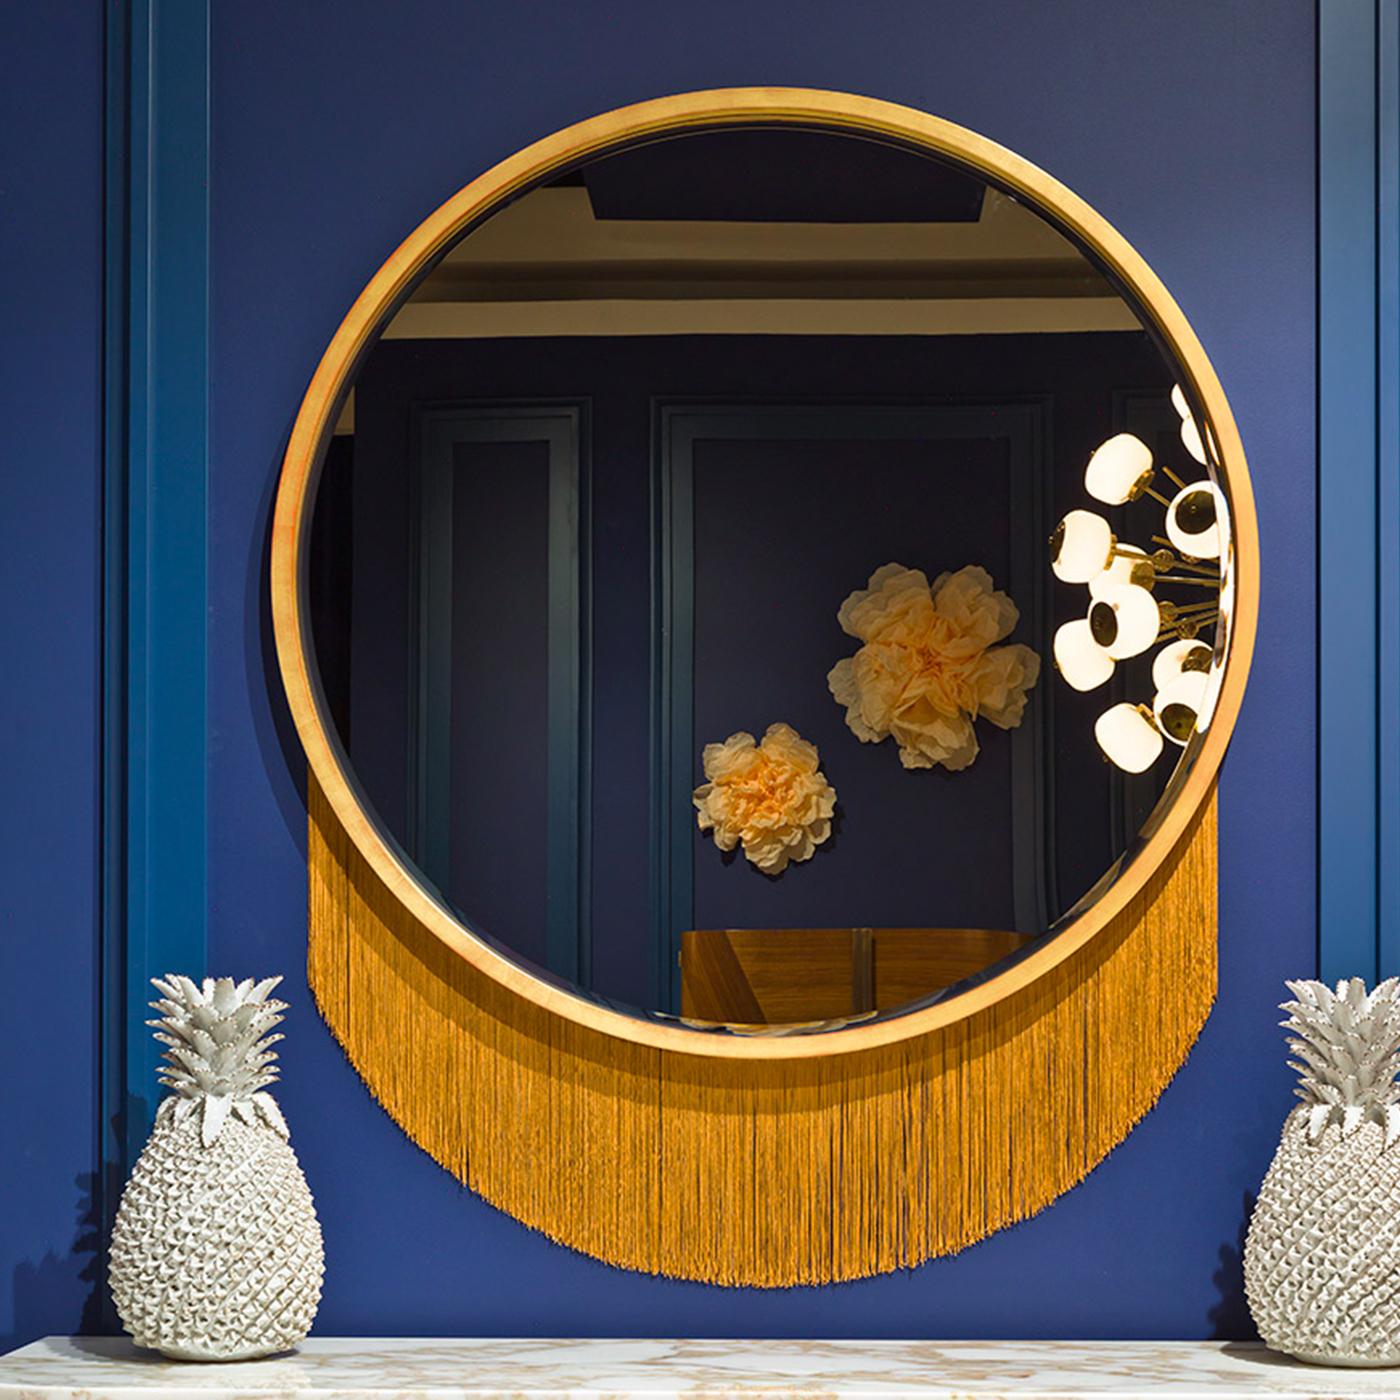 Dieser fesselnde Wandspiegel mit seinem minimalistischen Charme ist eine raffinierte Möglichkeit, jedes Midcentury- oder minimalistische Interieur stilvoll zu verschönern. Die markante runde Silhouette des Spiegels ist aus blattvergoldetem Holz